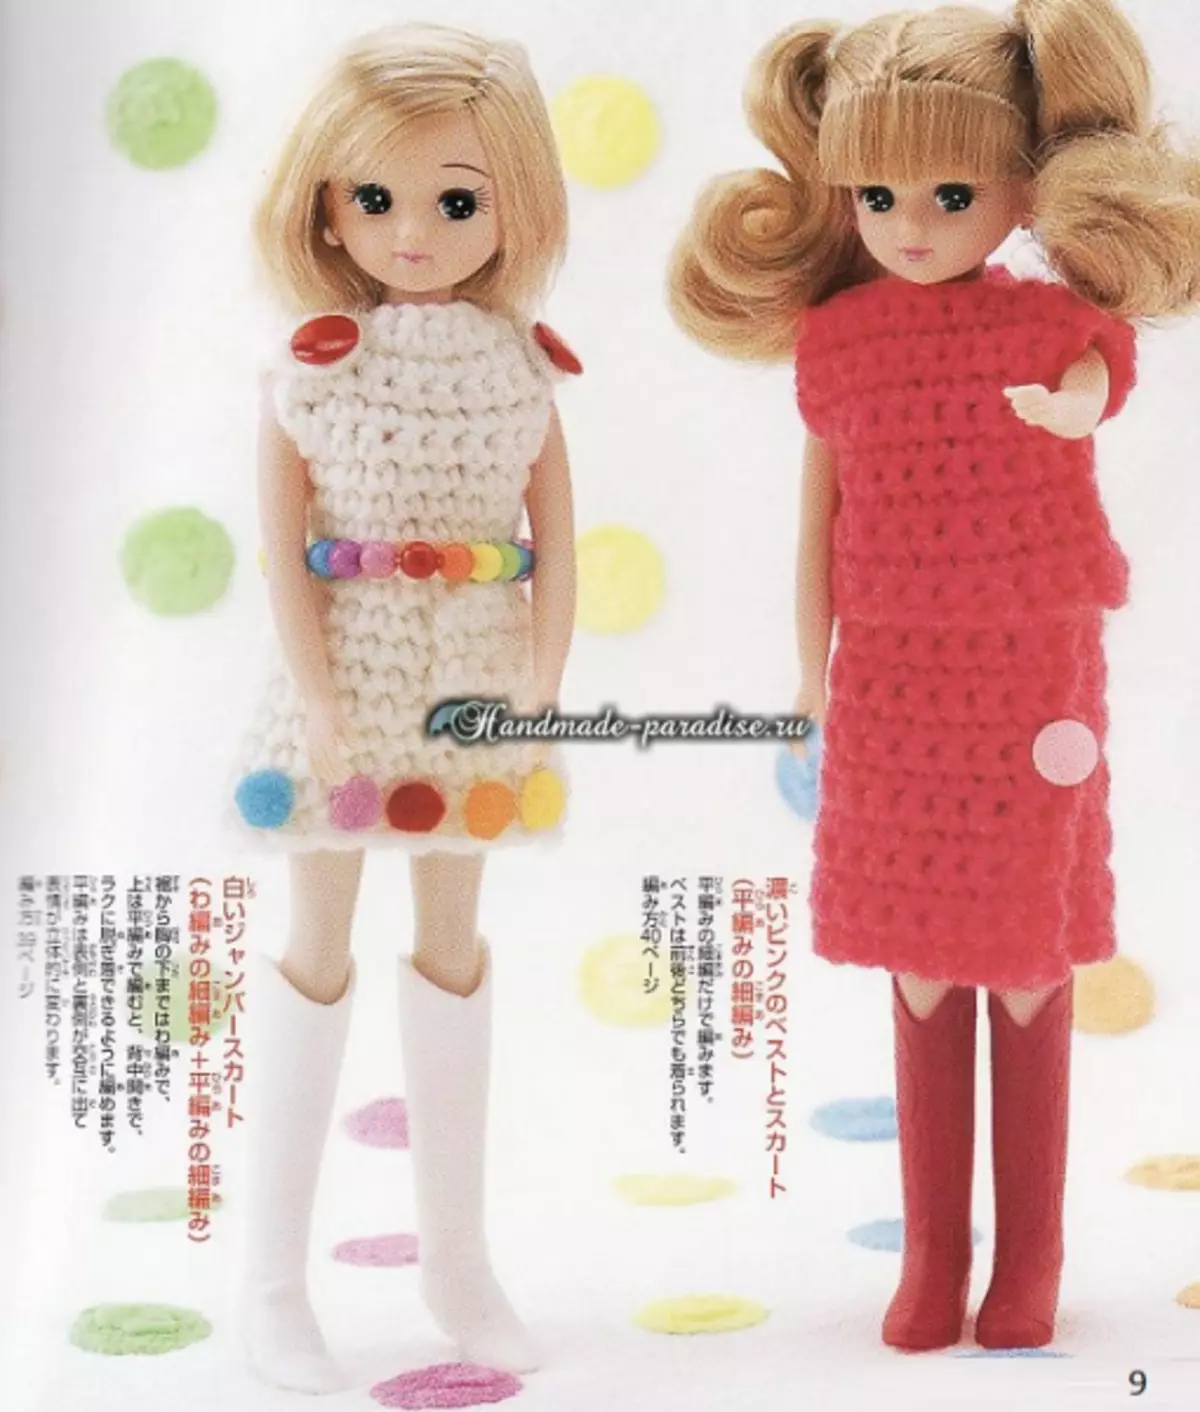 Neulotut vaatteet nuket. Magazine, jossa on järjestelmiä